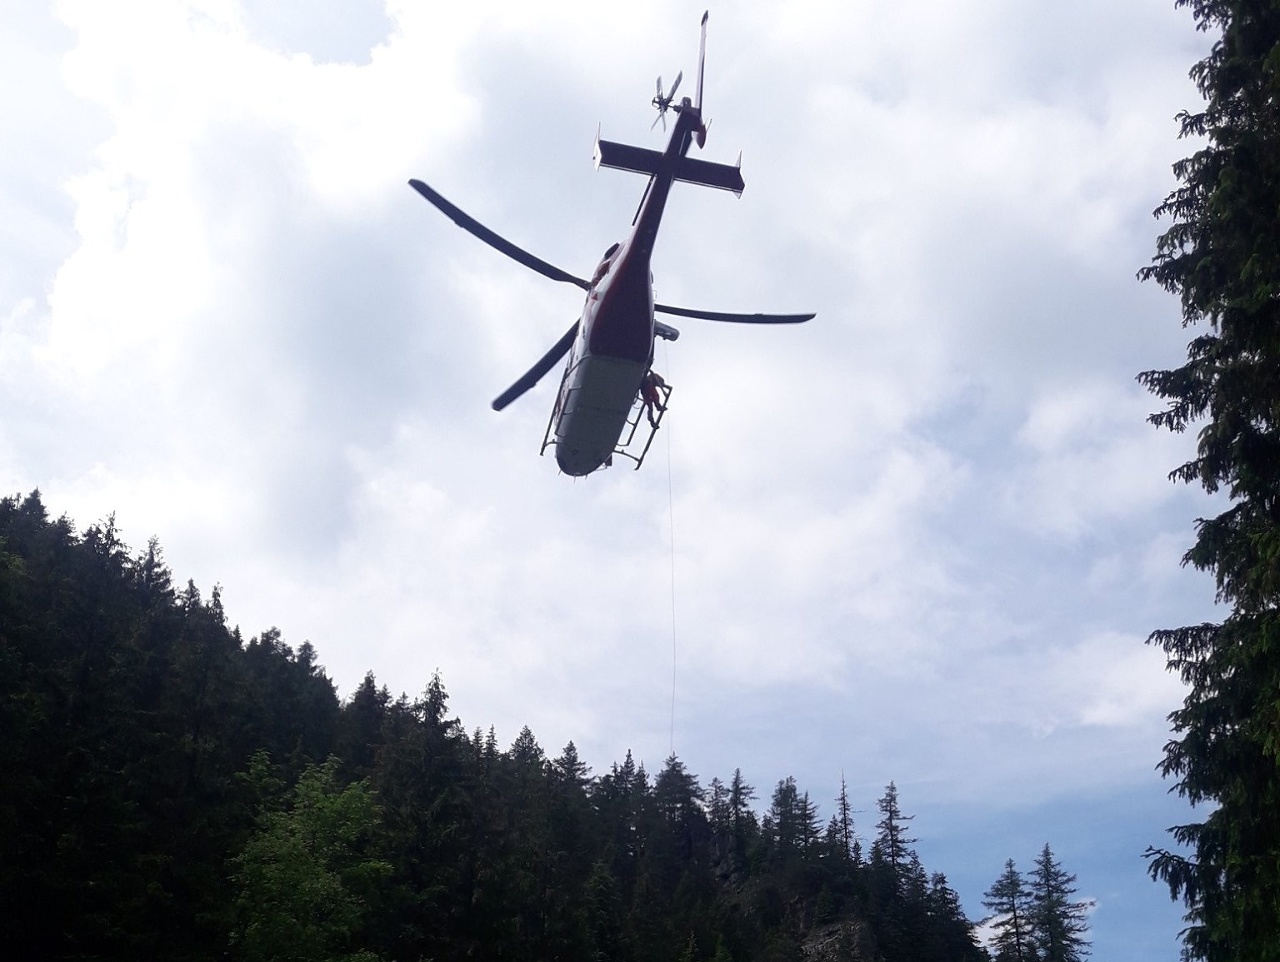 Horskí záchranári pomáhali 42-ročnej slovenskej turistke